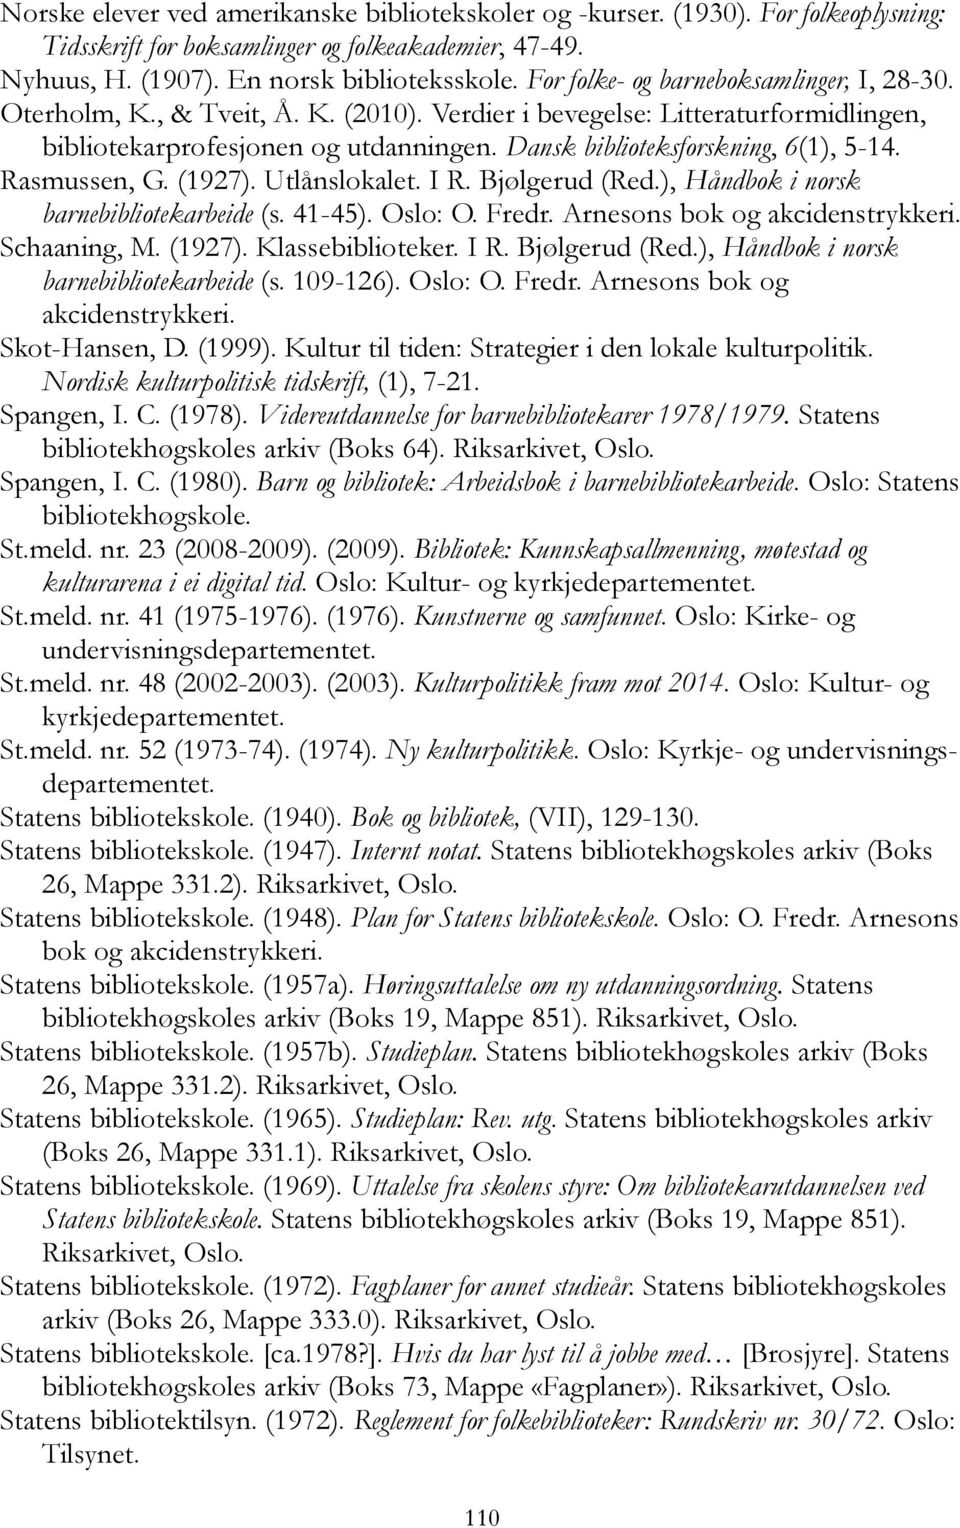 Dansk biblioteksforskning, 6(1), 5-14. Rasmussen, G. (1927). Utlånslokalet. I R. Bjølgerud (Red.), Håndbok i norsk barnebibliotekarbeide (s. 41-45). Oslo: O. Fredr. Arnesons bok og akcidenstrykkeri.